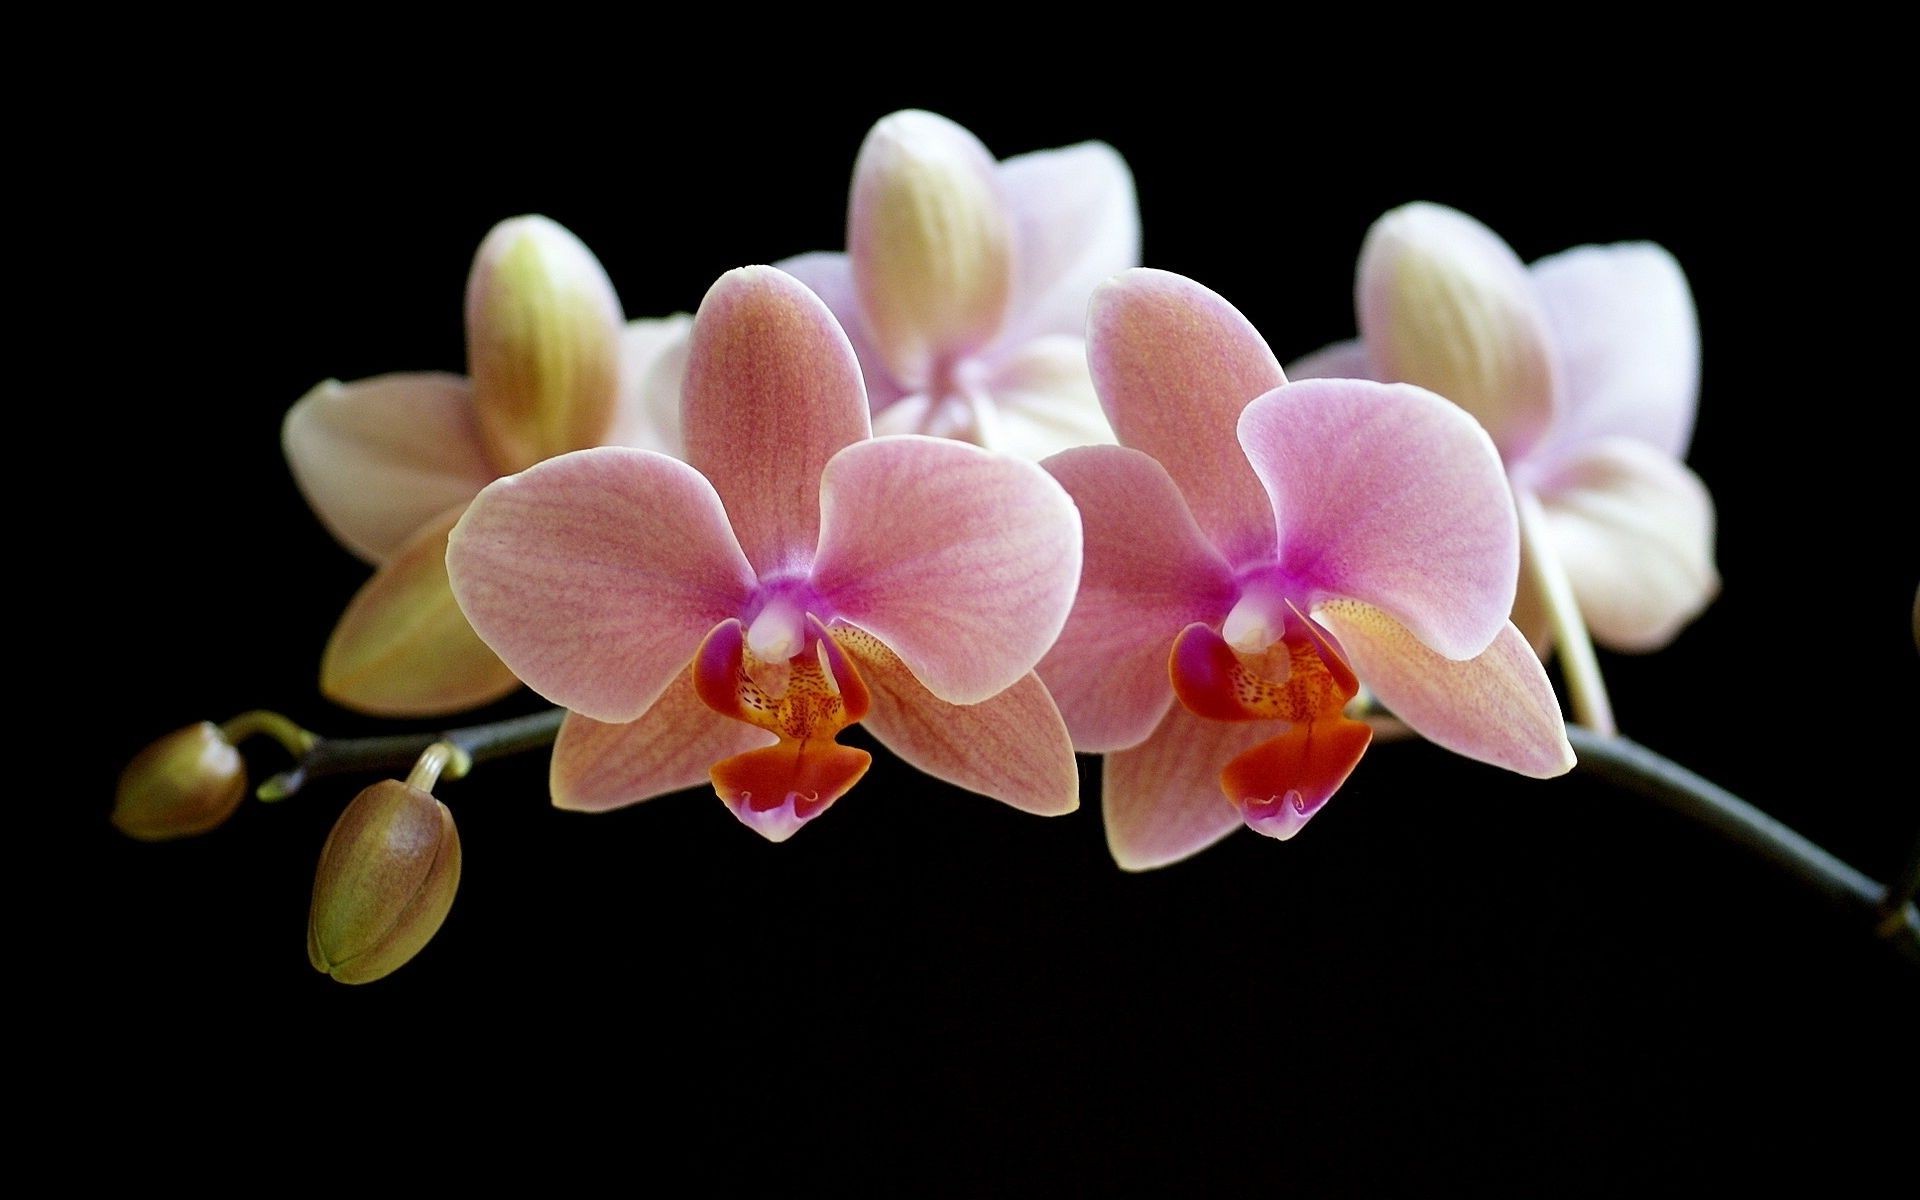 цветы цветок флора природа фаленопсис тропический орхидеи экзотические блюминг лепесток красивые элегантный цветочные романтический романтика лузга ботанический цвет филиал нежный